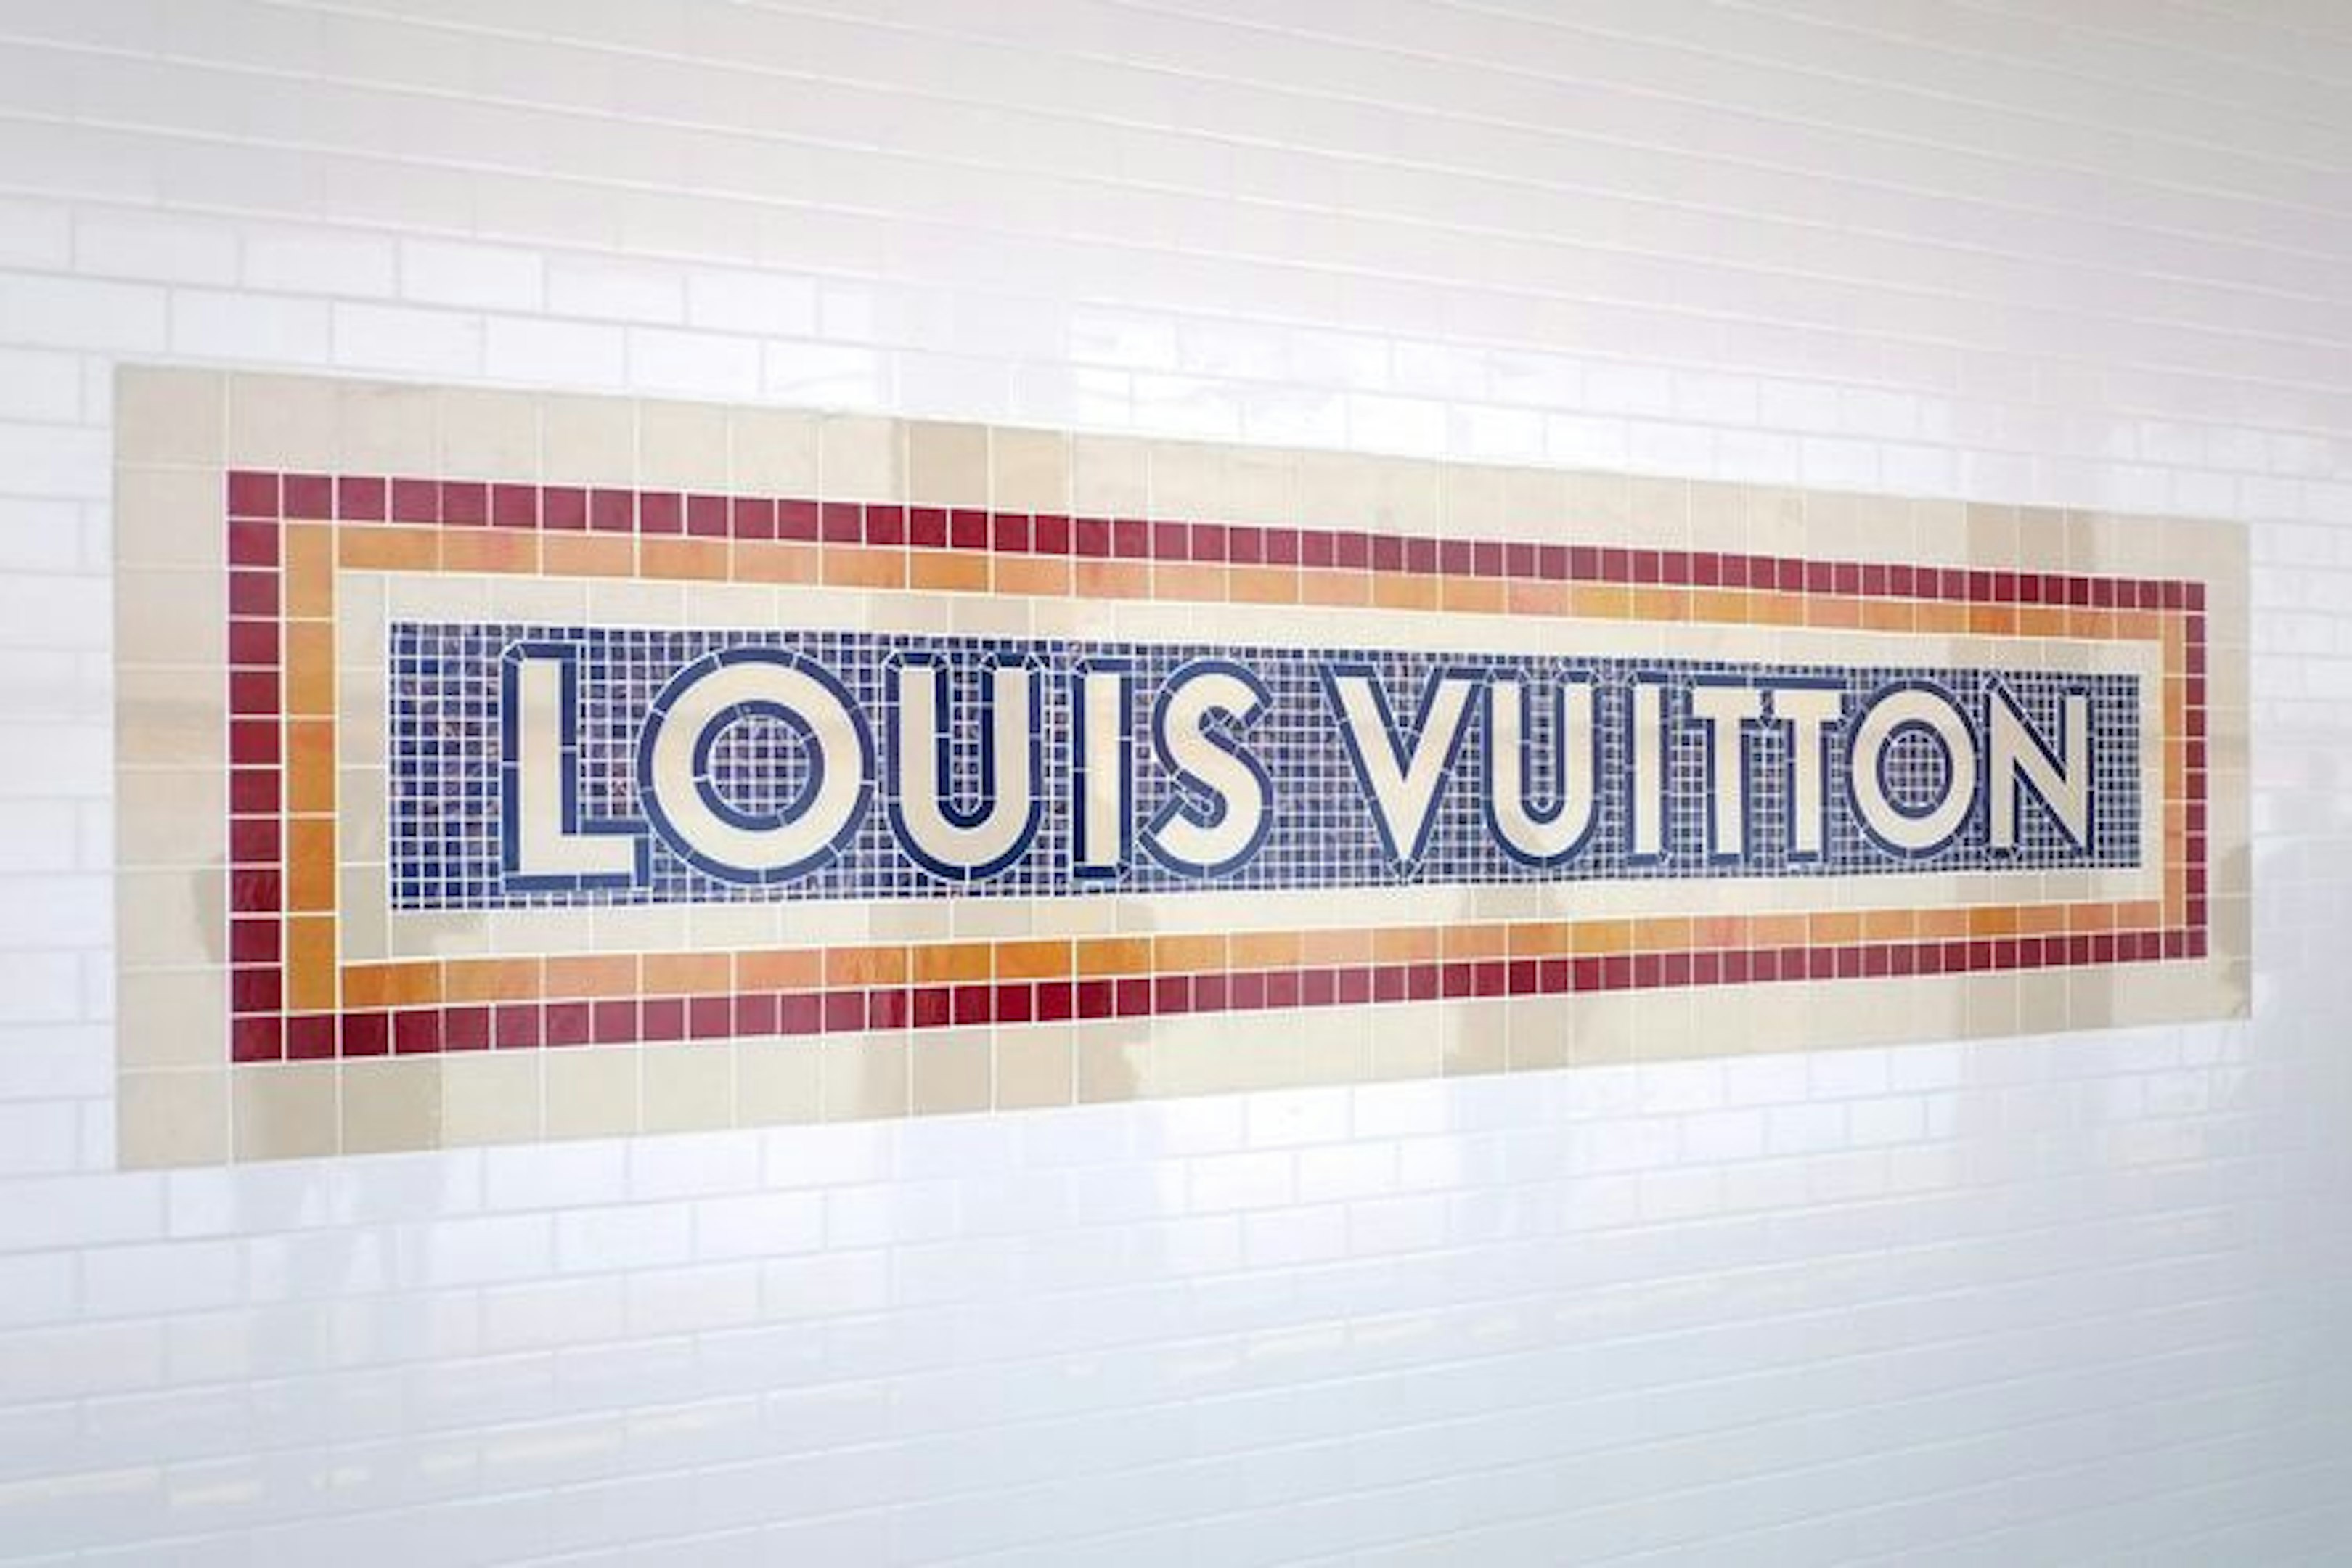 Volez, Voguez, Voyagez - Louis Vuitton” Exhibition in Shanghai